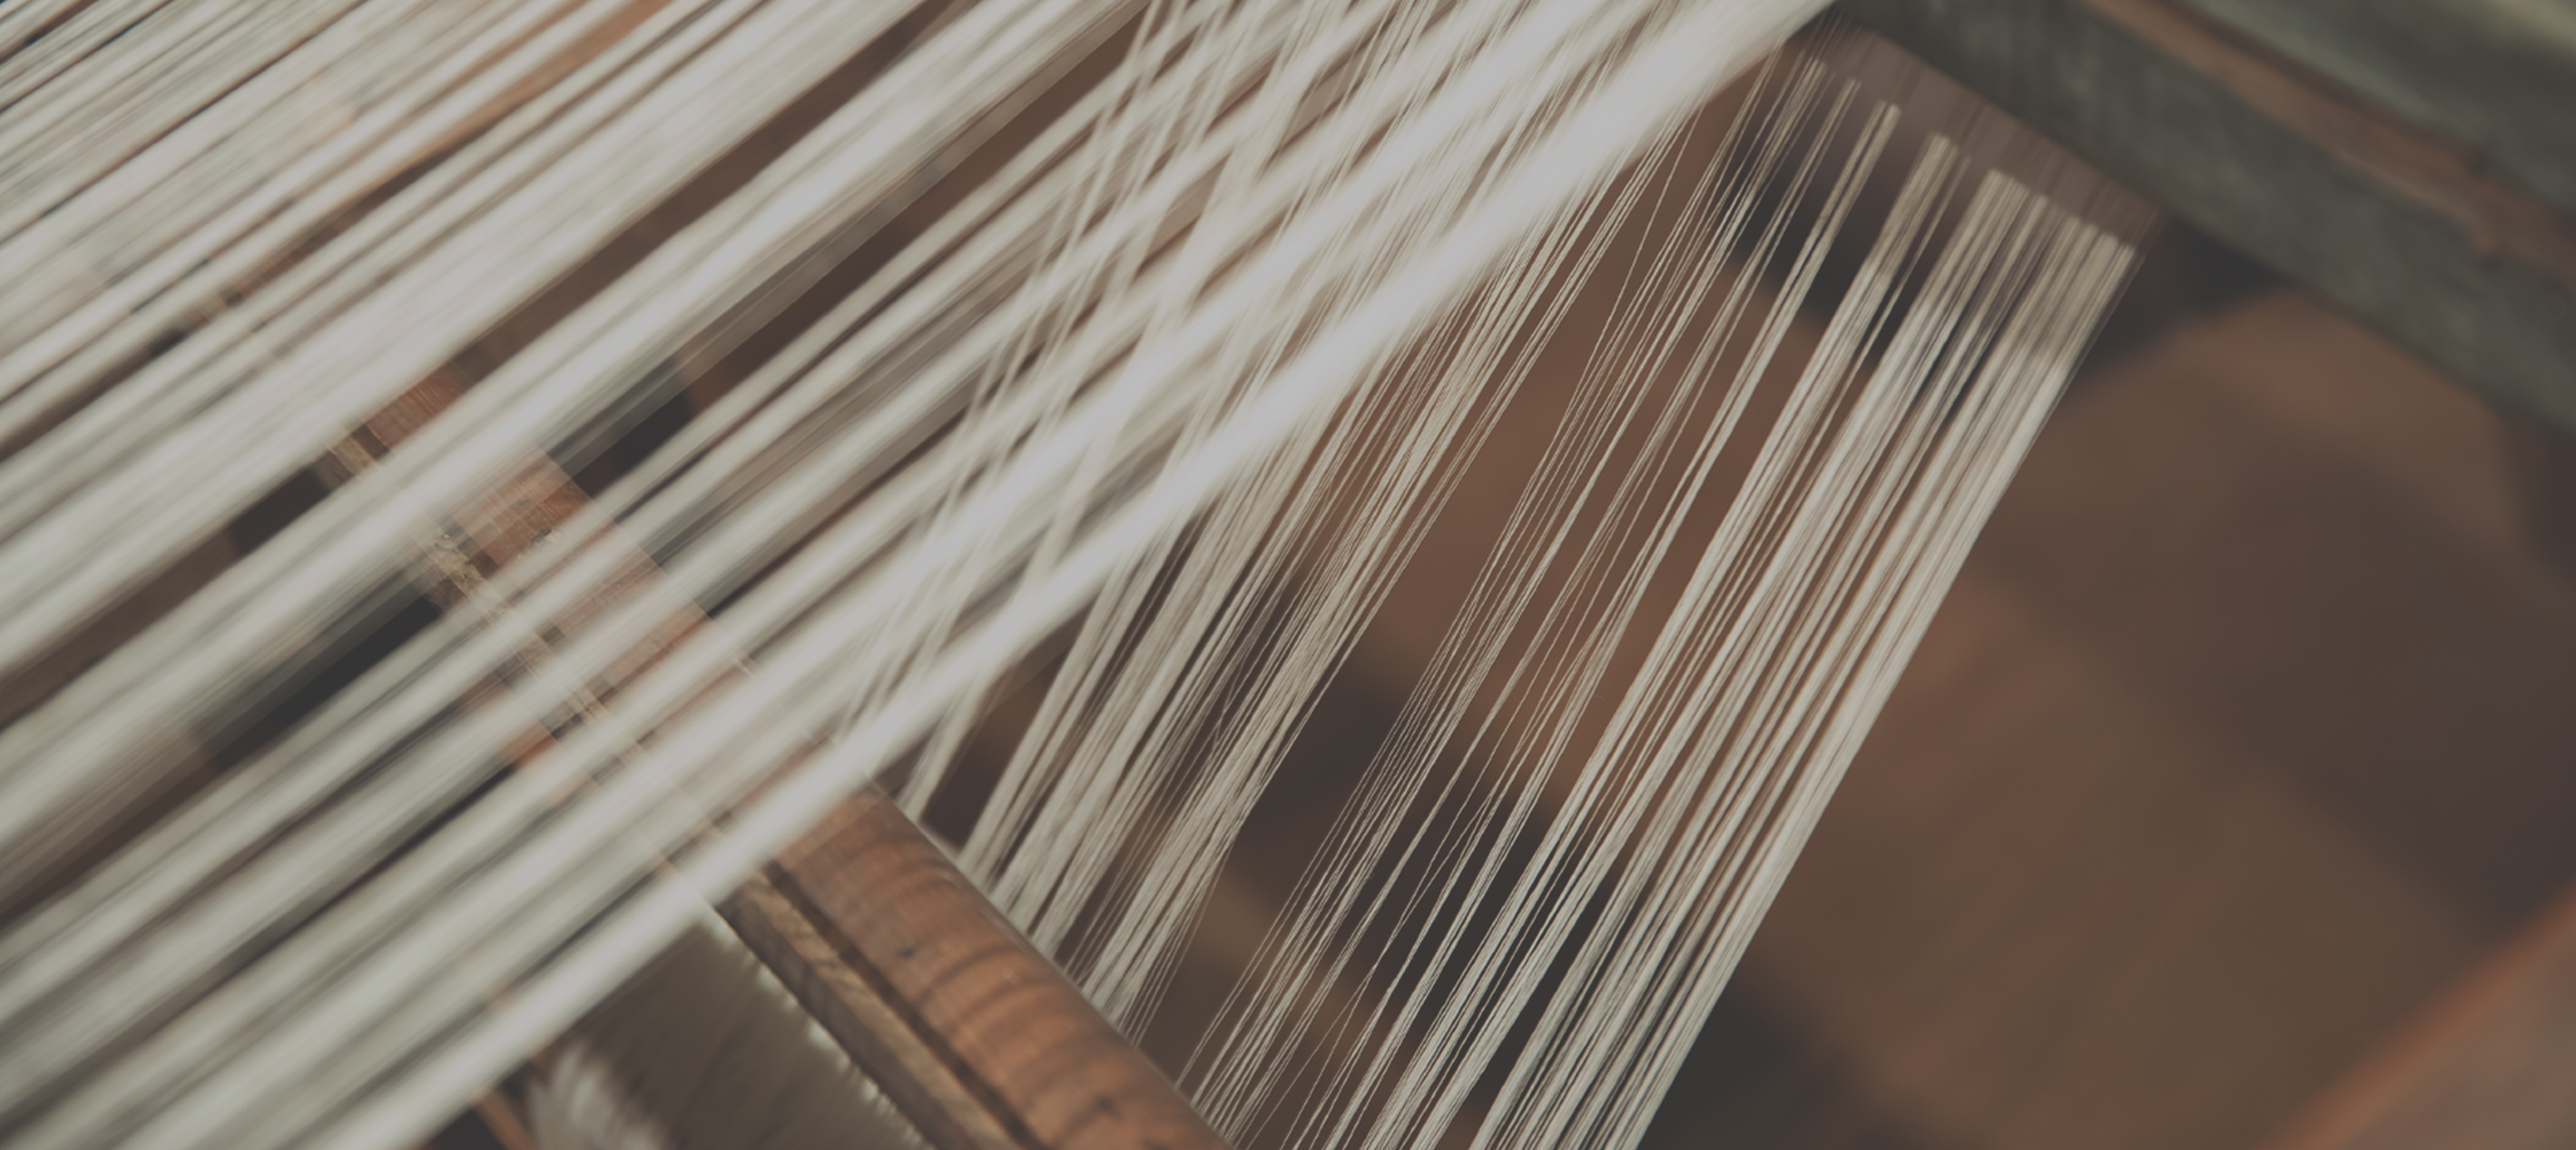 手績み手織り麻のものづくりを体験する イメージ